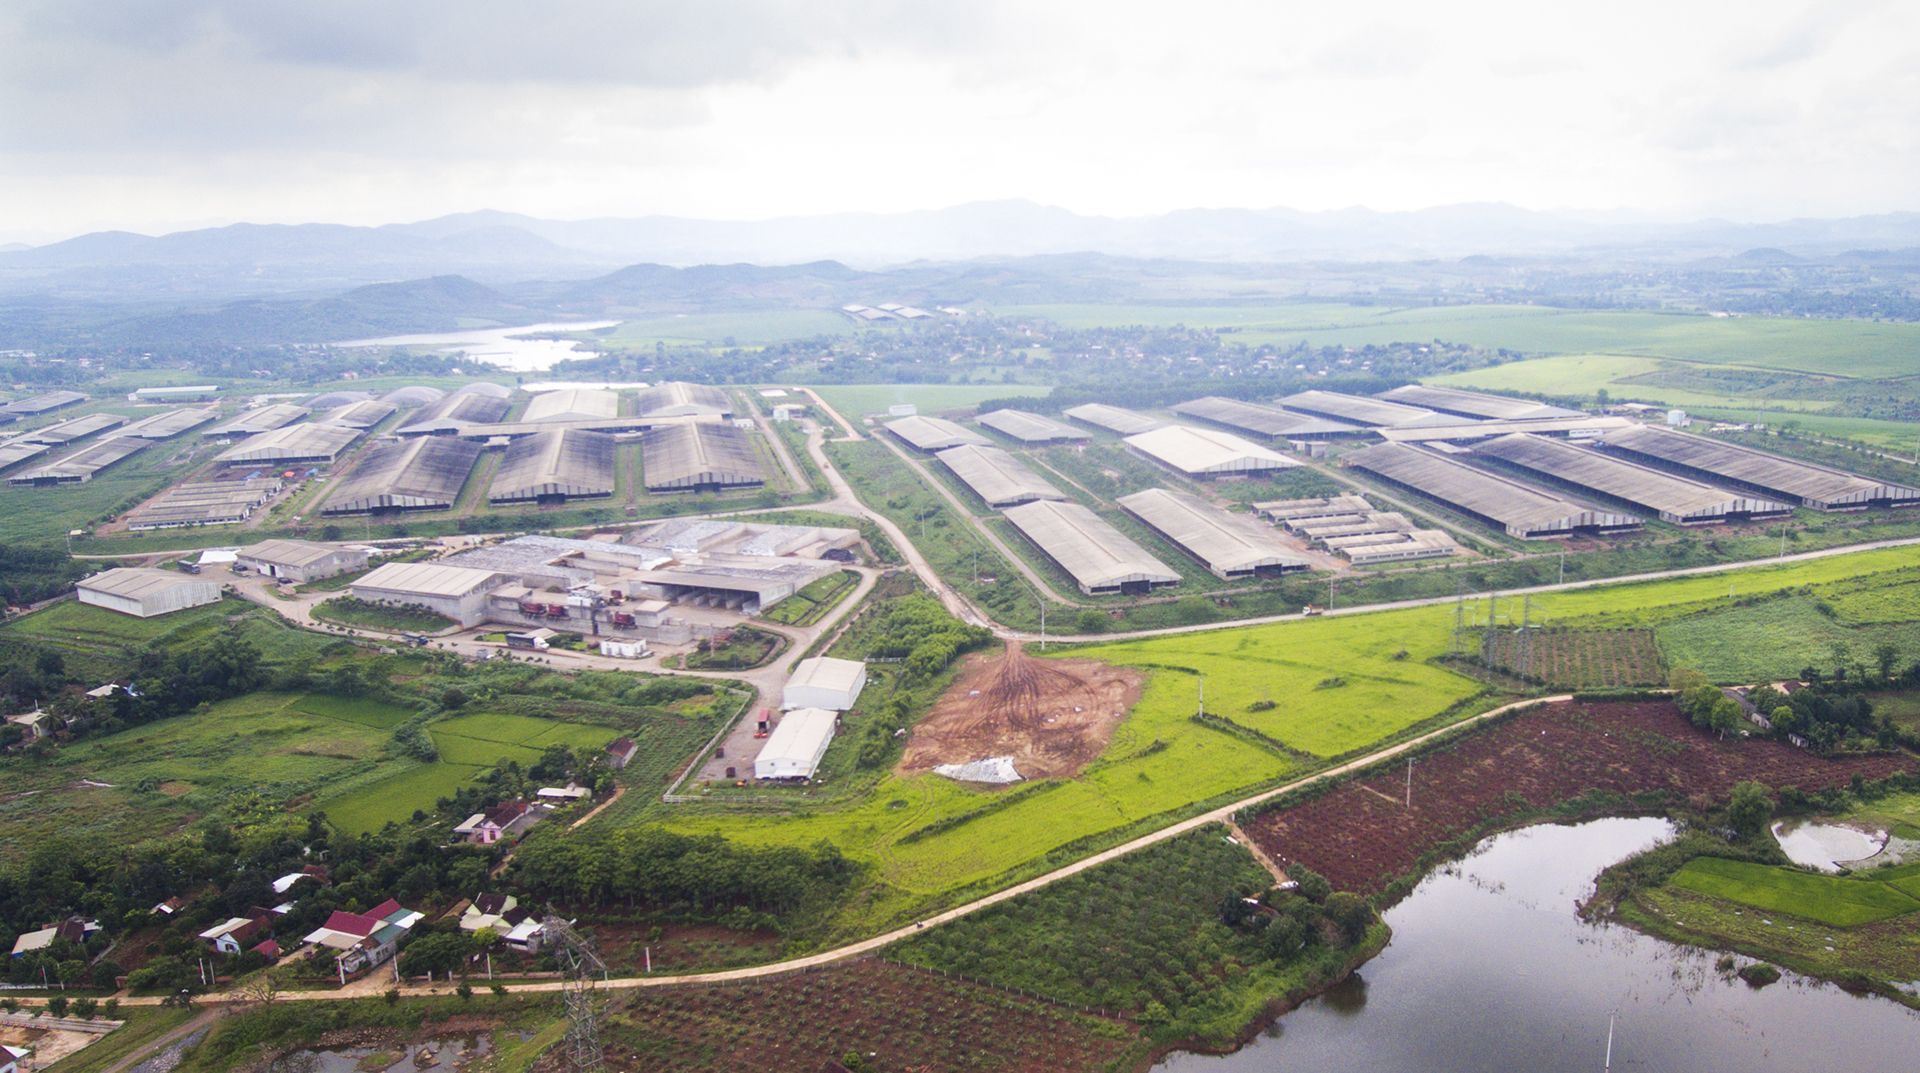 Quang cảnh một trang trại nông nghiệp ứng dụng công nghệ cao tại Nghĩa Đàn.